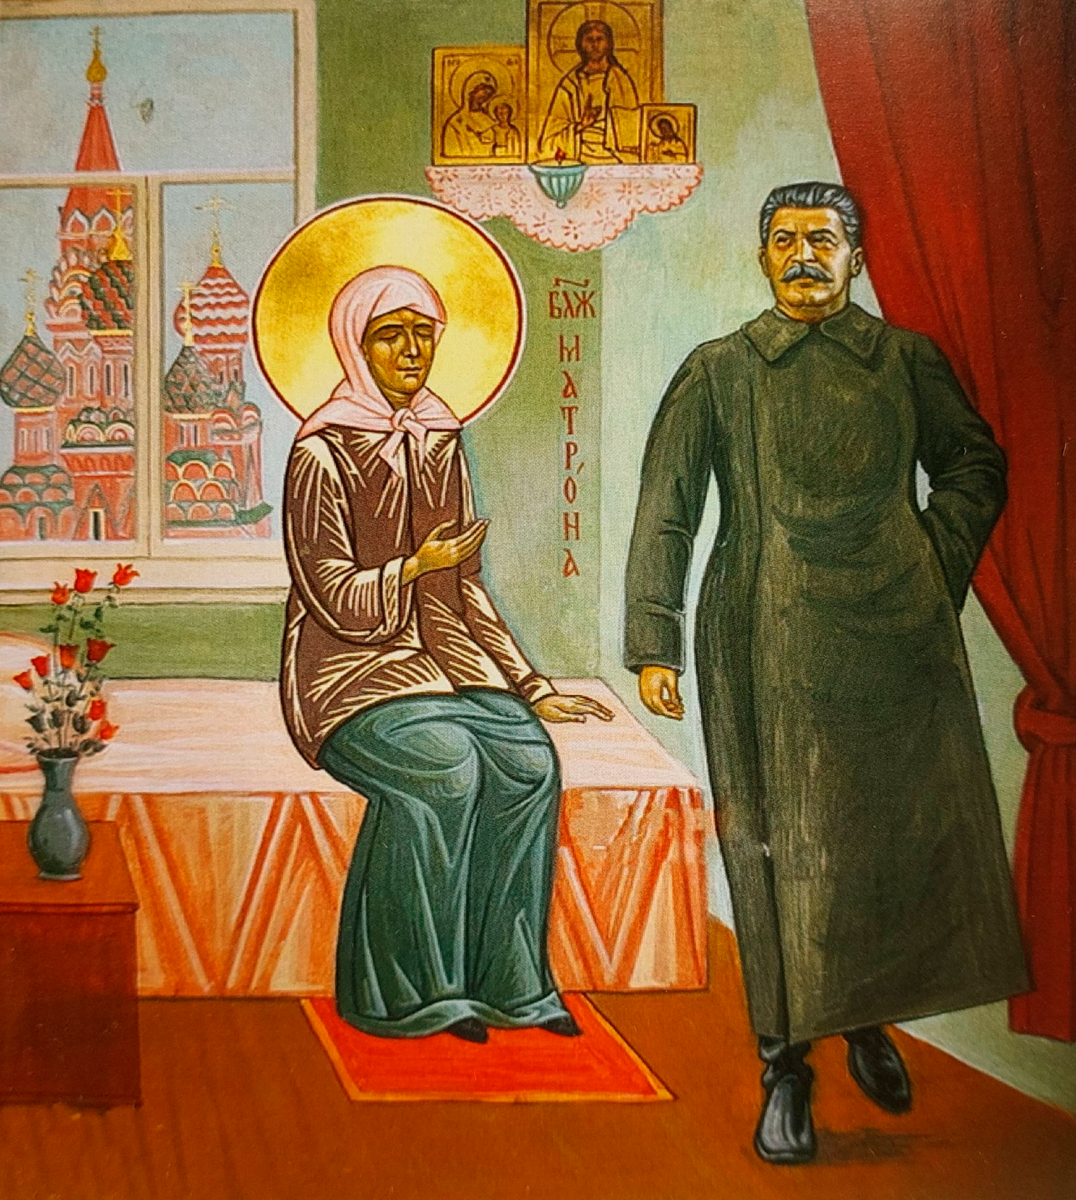 Икона «Матрона и Сталин» (Блаженная Матрона благословляет Иосифа Сталина)